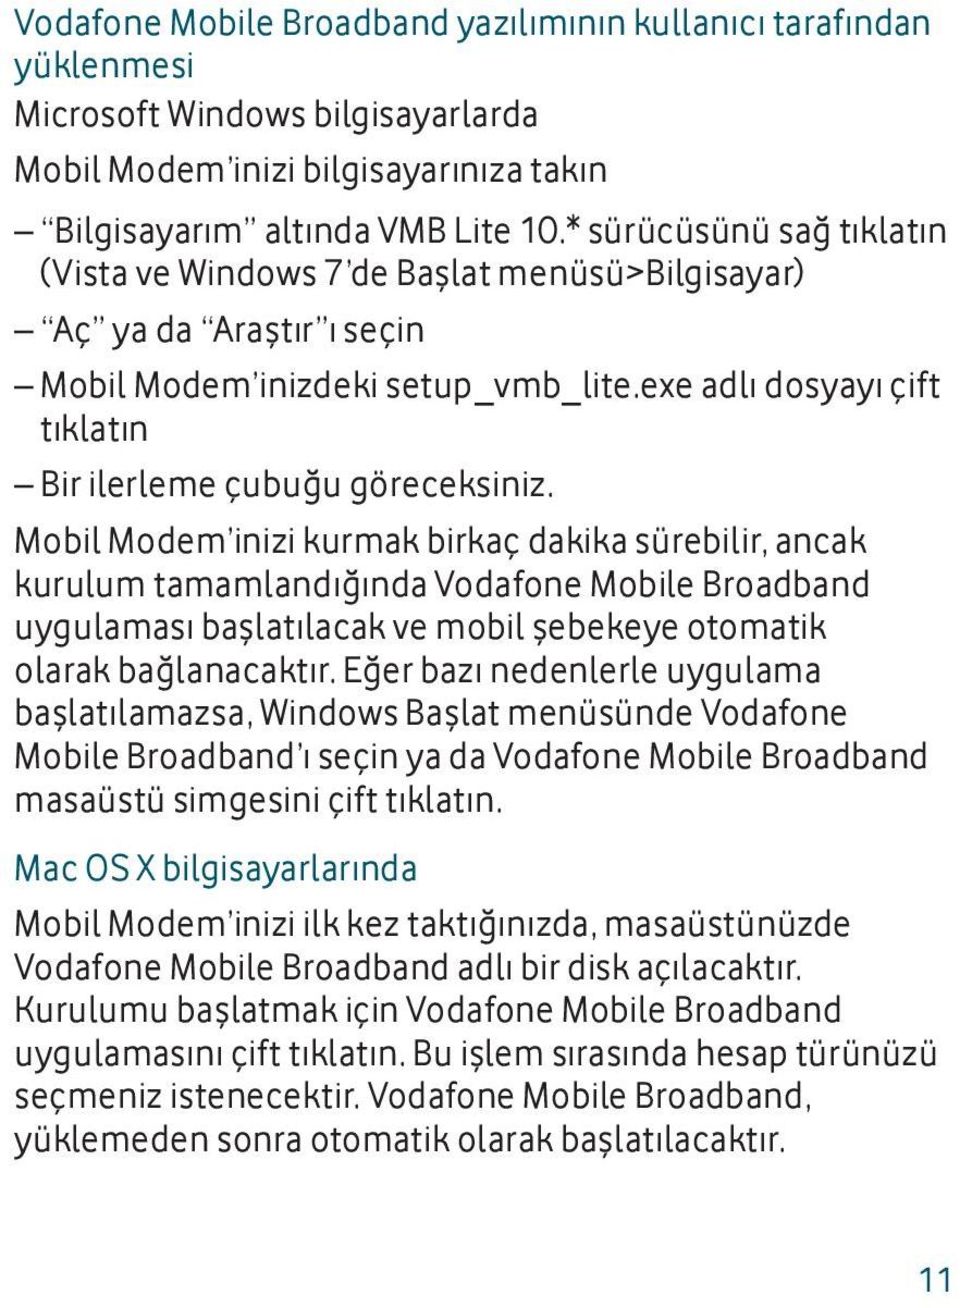 Mobil Modem inizi kurmak birkaç dakika sürebilir, ancak kurulum tamamlandığında Vodafone Mobile Broadband uygulaması başlatılacak ve mobil şebekeye otomatik olarak bağlanacaktır.